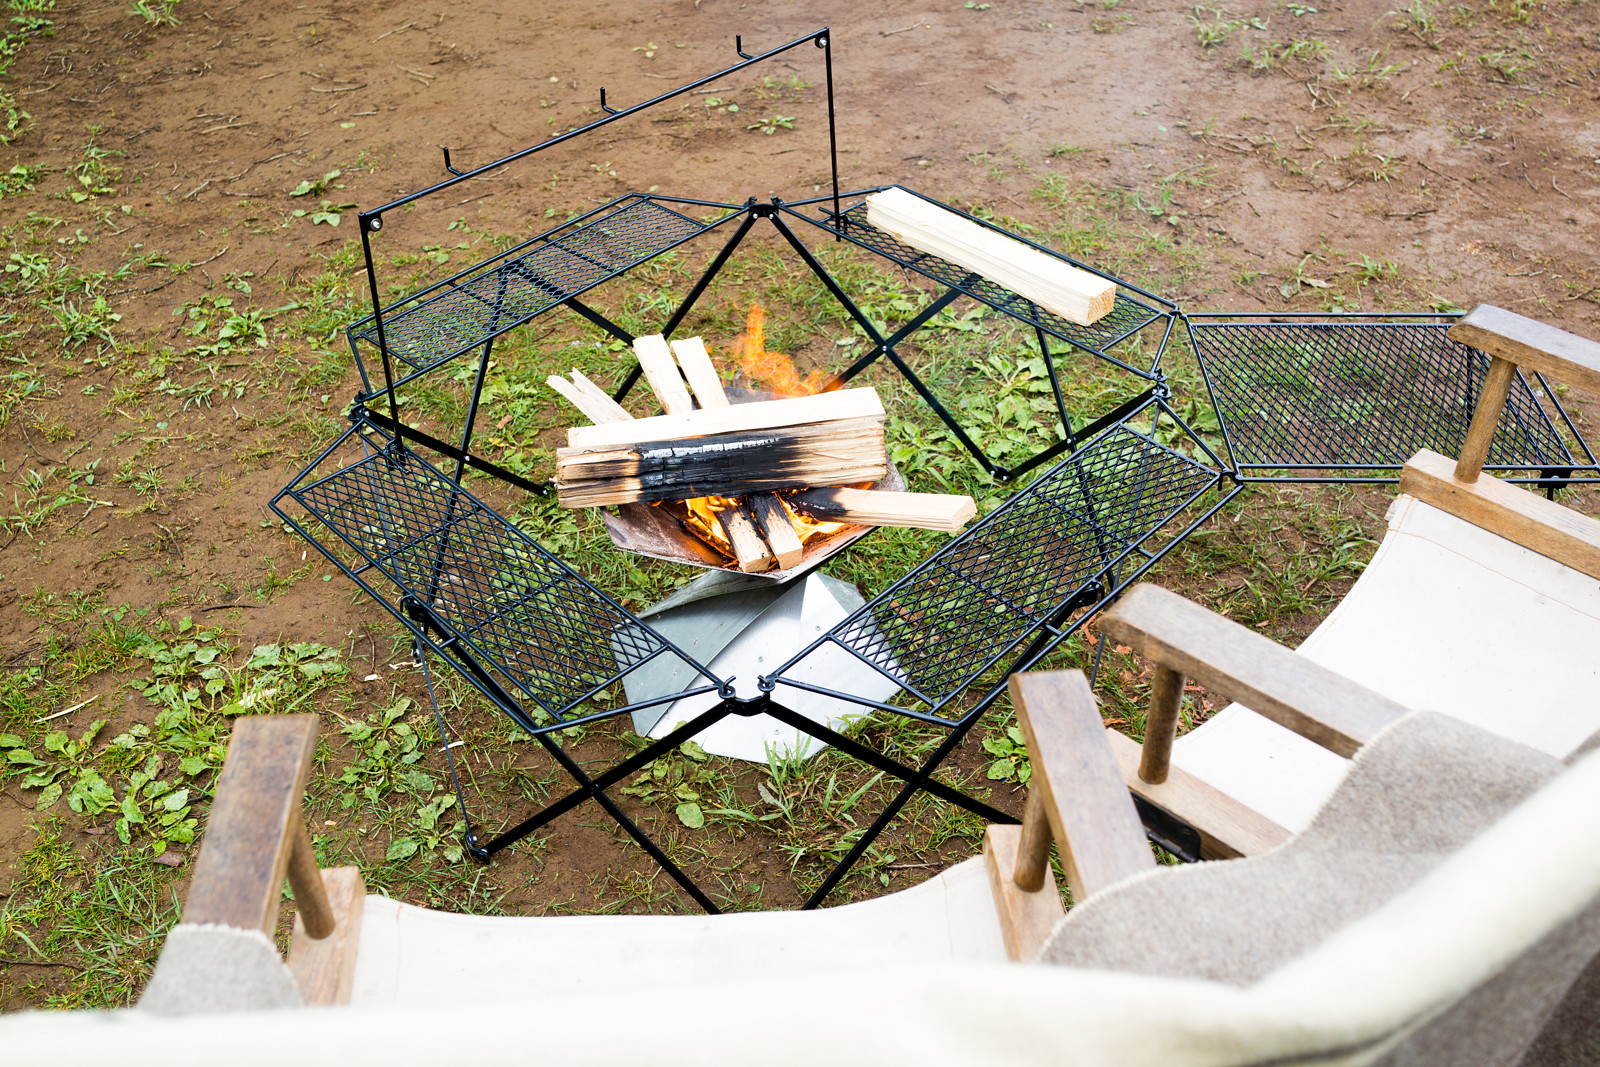 囲炉裏テーブル特集！ 焚き火台×テーブルでキャンプを快適に！  焚き火・火おこし道具 BE-PALキャンプ、アウトドア、自然派生活の情報源ビーパル